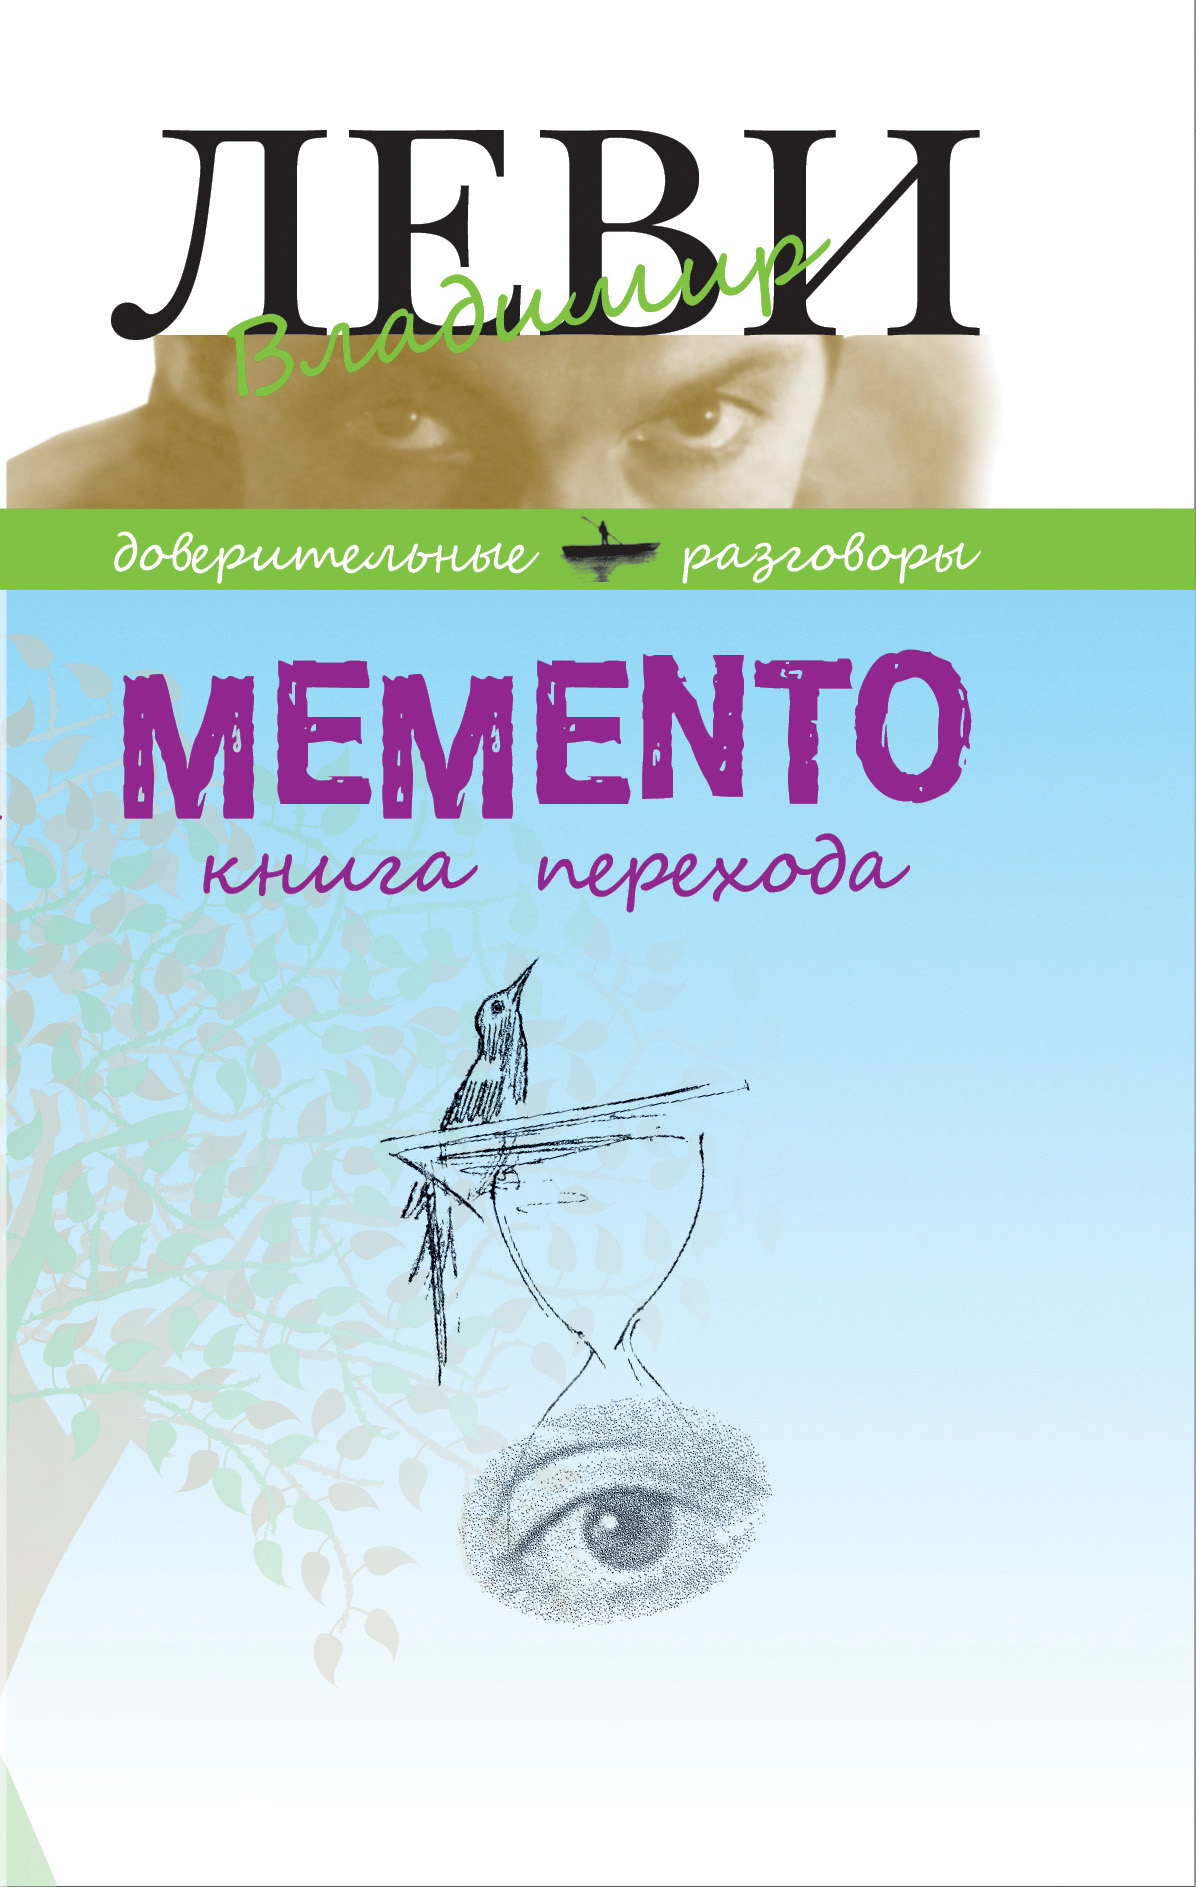 Книга MEMENTO, книга перехода из серии , созданная Владимир Леви, может относится к жанру Личностный рост, Самосовершенствование. Стоимость электронной книги MEMENTO, книга перехода с идентификатором 21233663 составляет 176.00 руб.